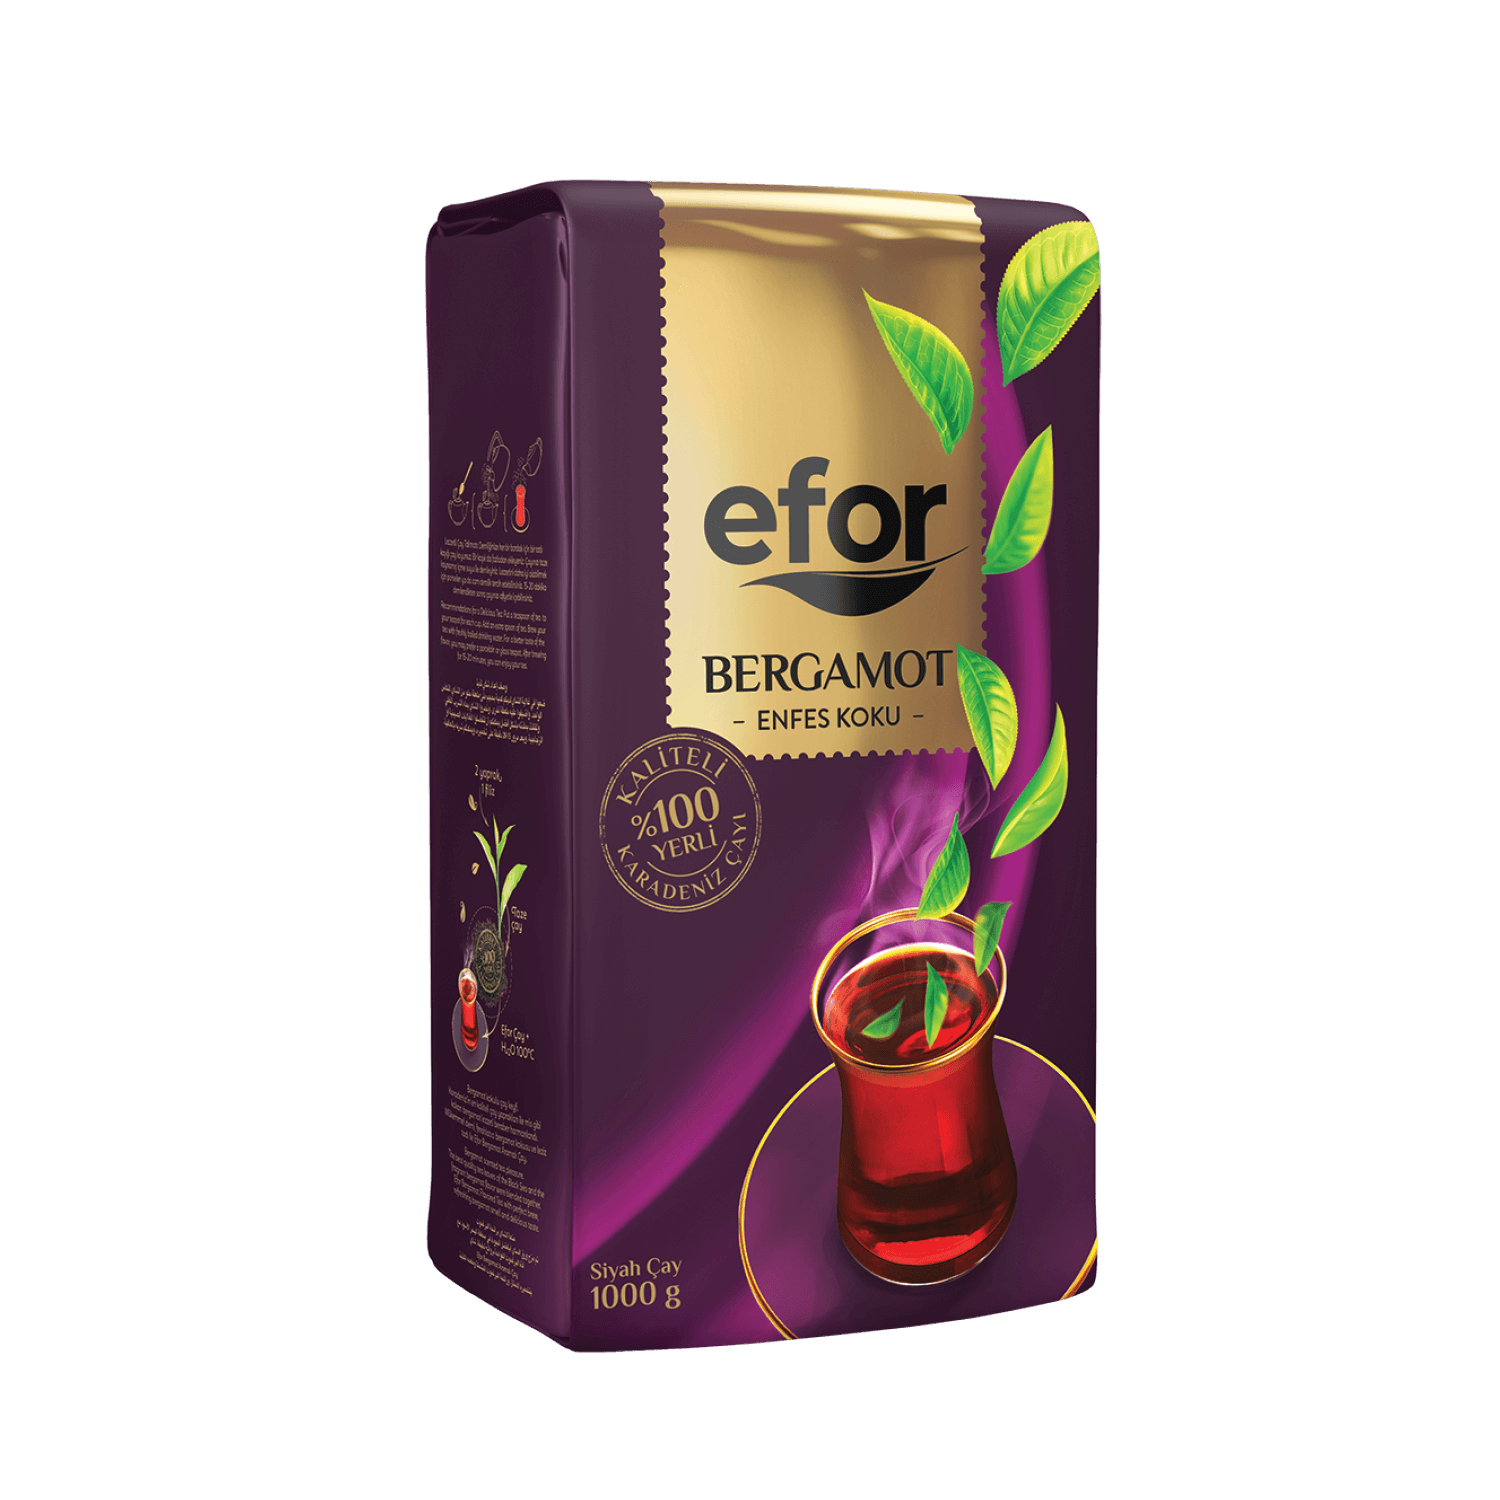 Efor Bergamot Delicious Fragrance Tea 1000g